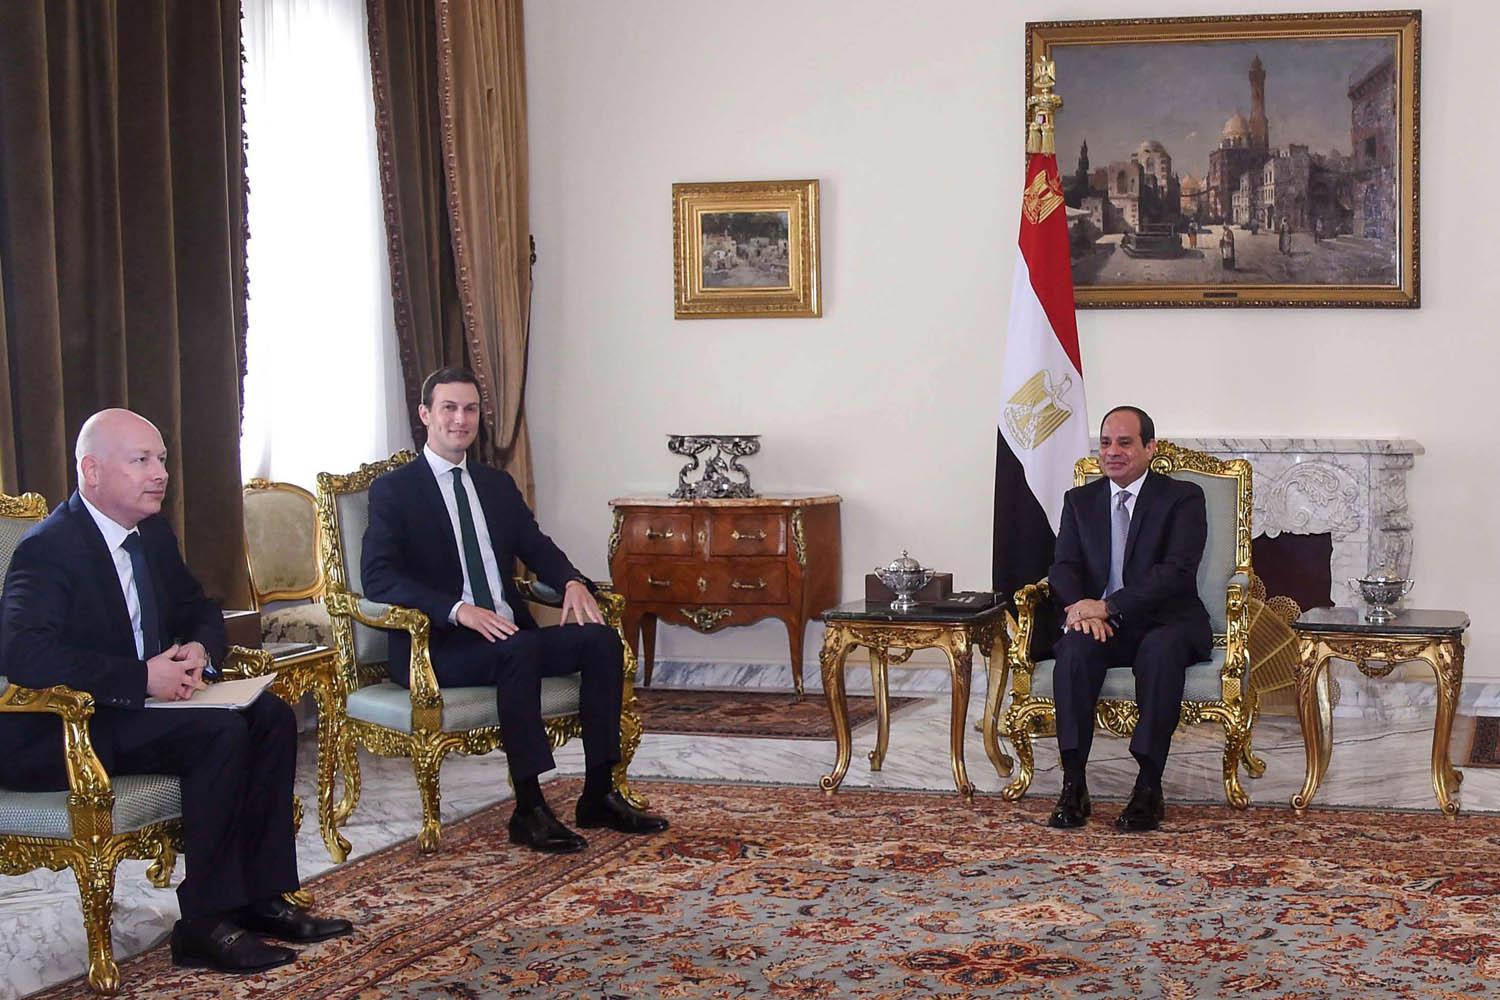 جاريد كوشنر مبعوث الرئيس الأميركي يلتقي الرئيس المصري عبدالفتاح السيسي